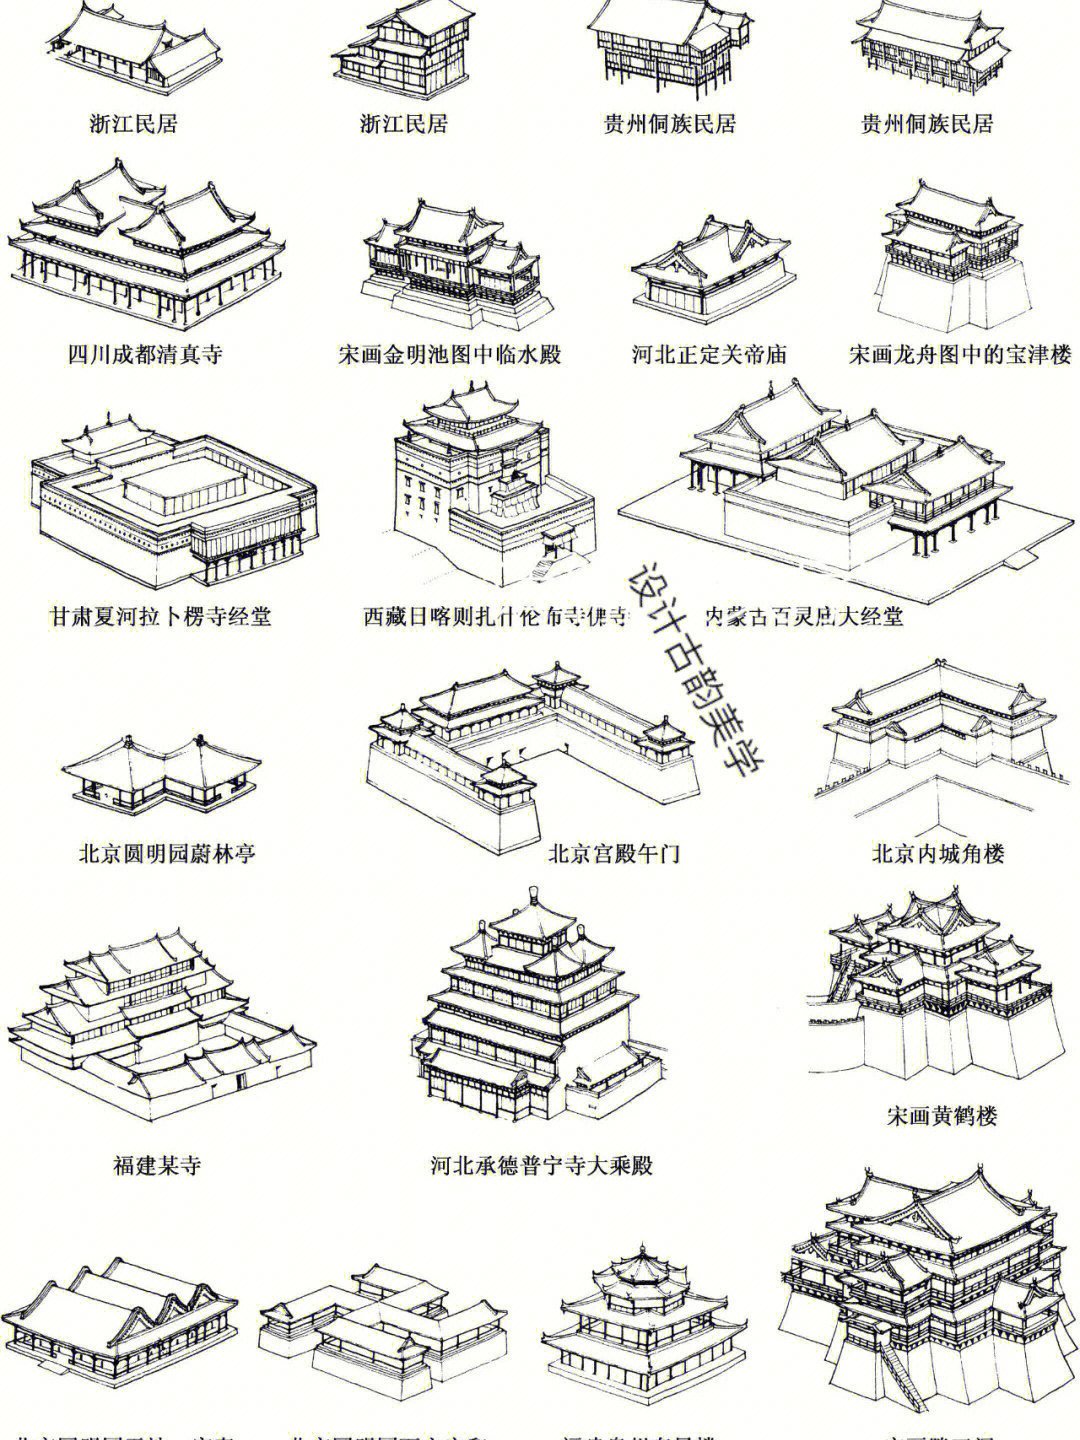 每天介绍一样古建筑大集合中国传统屋顶形式